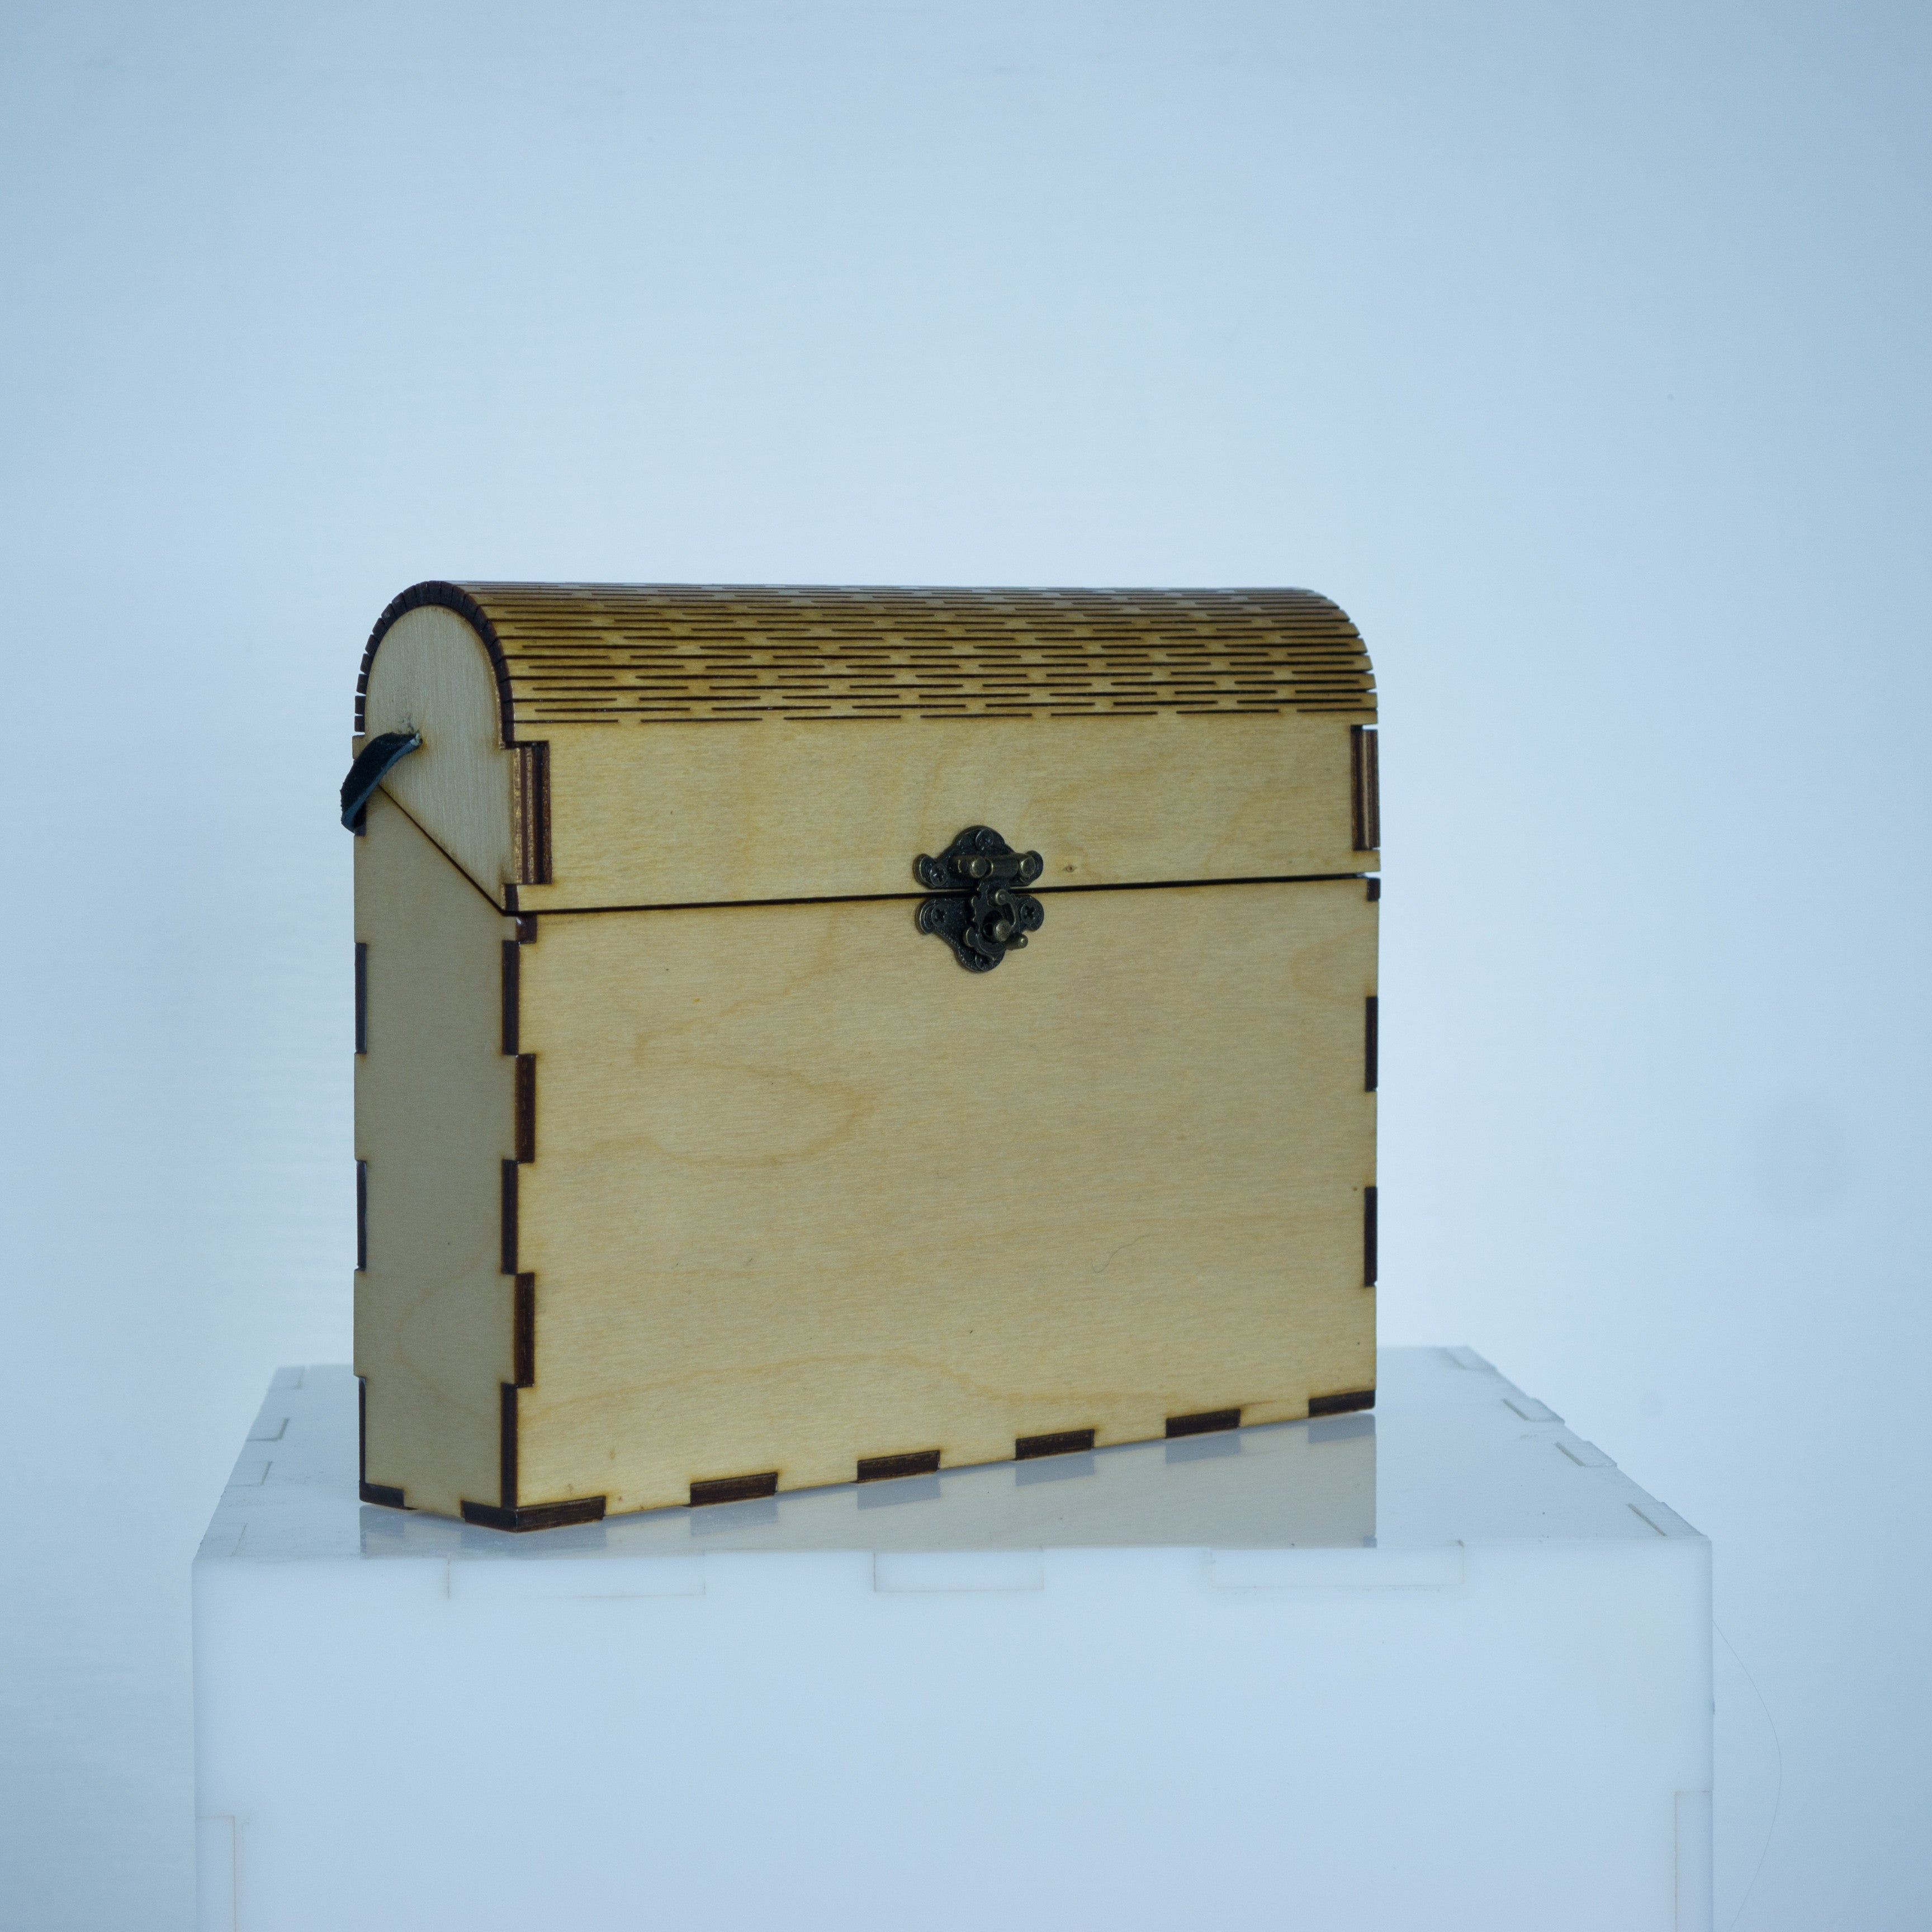 The MINI wood purse